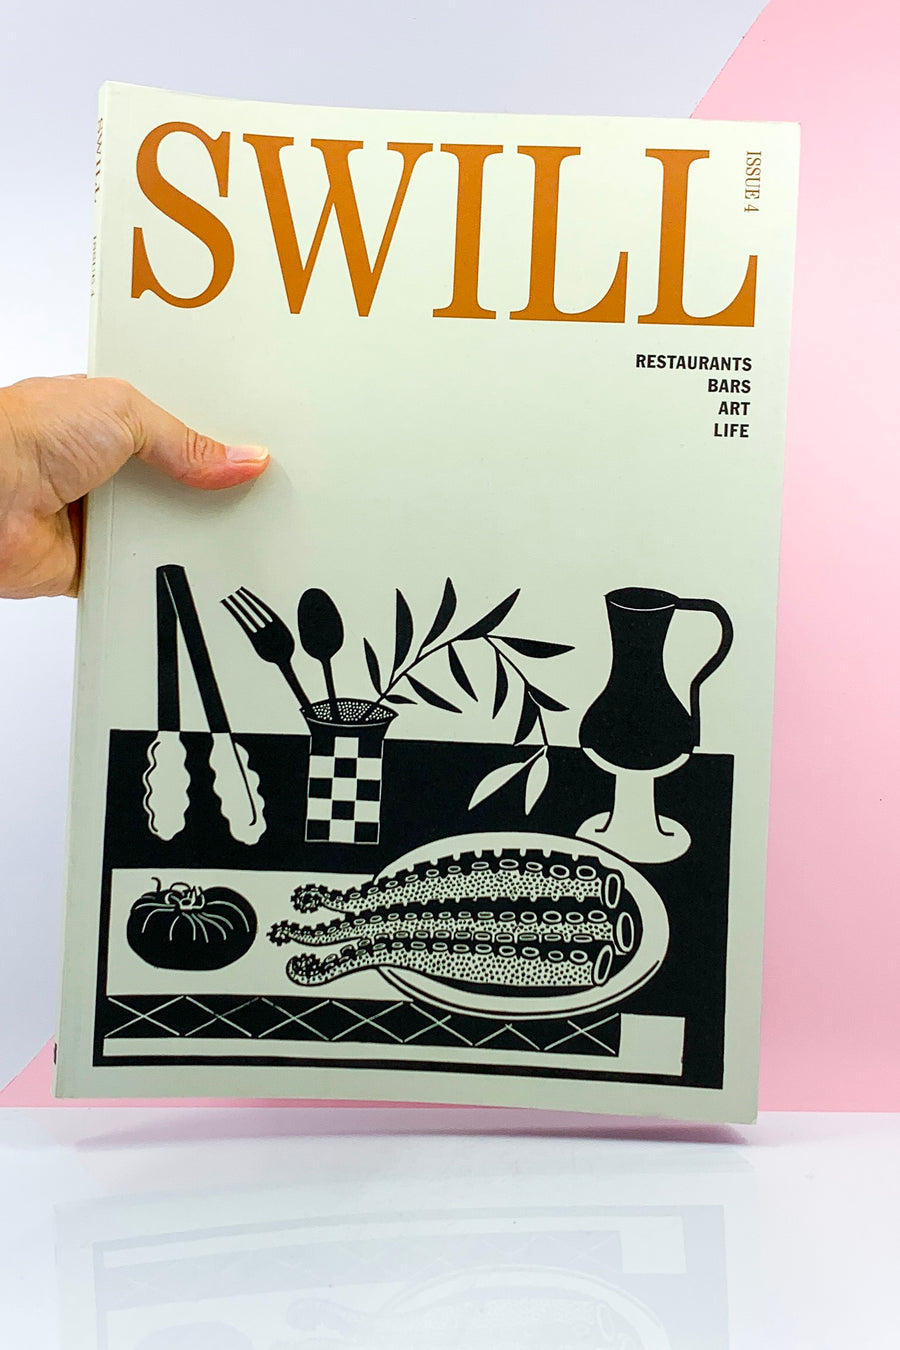 Swill Magazine #4